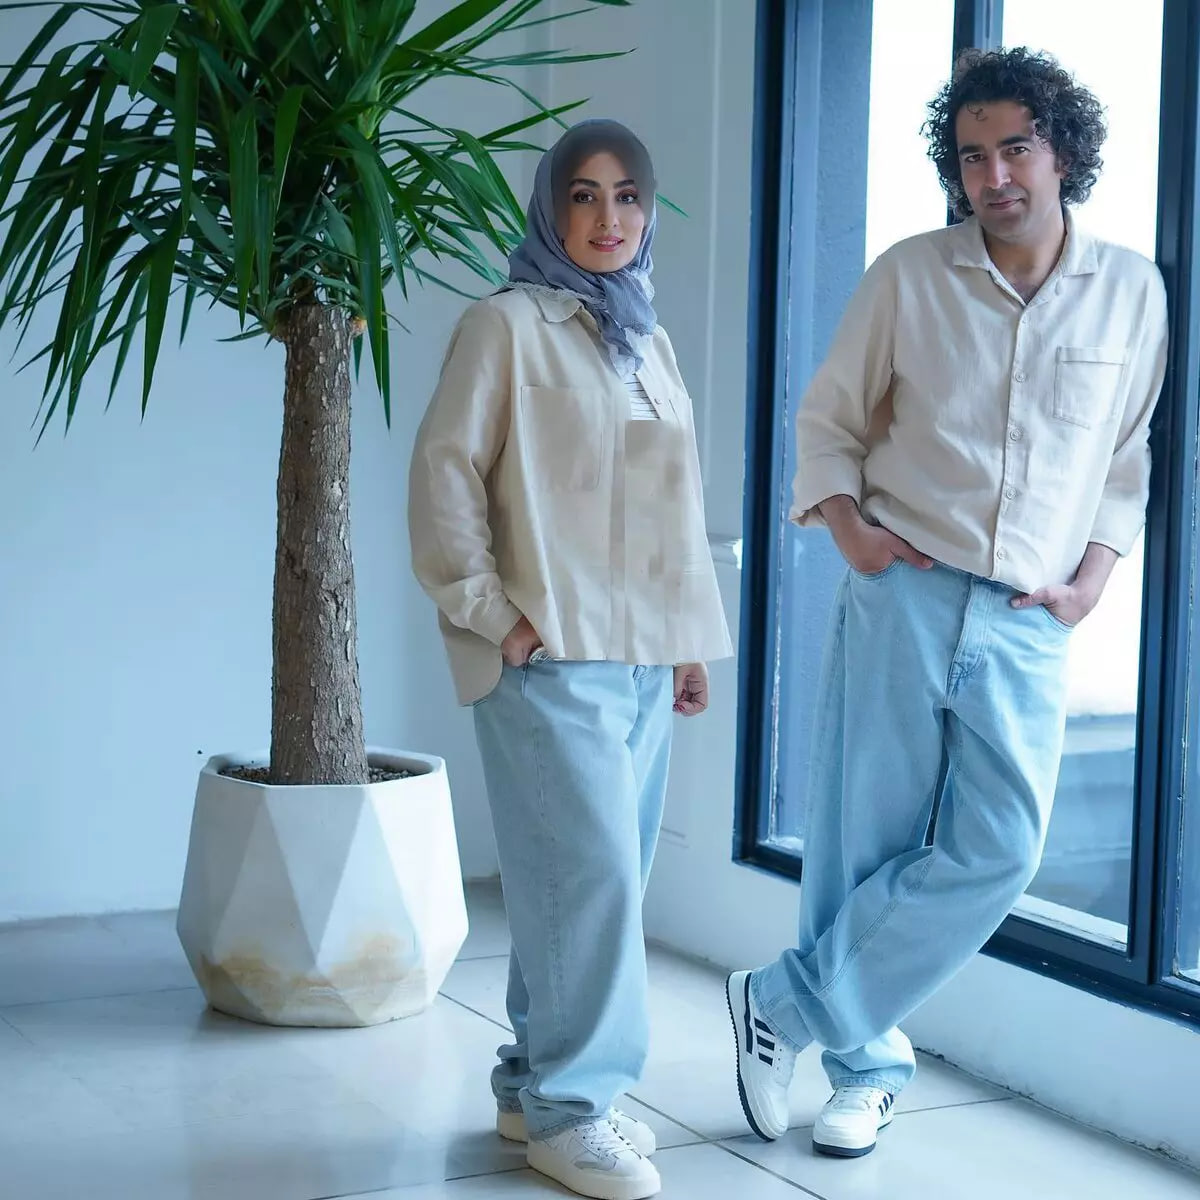 استایل مینیمال الهام طهموری در کنار همسرش